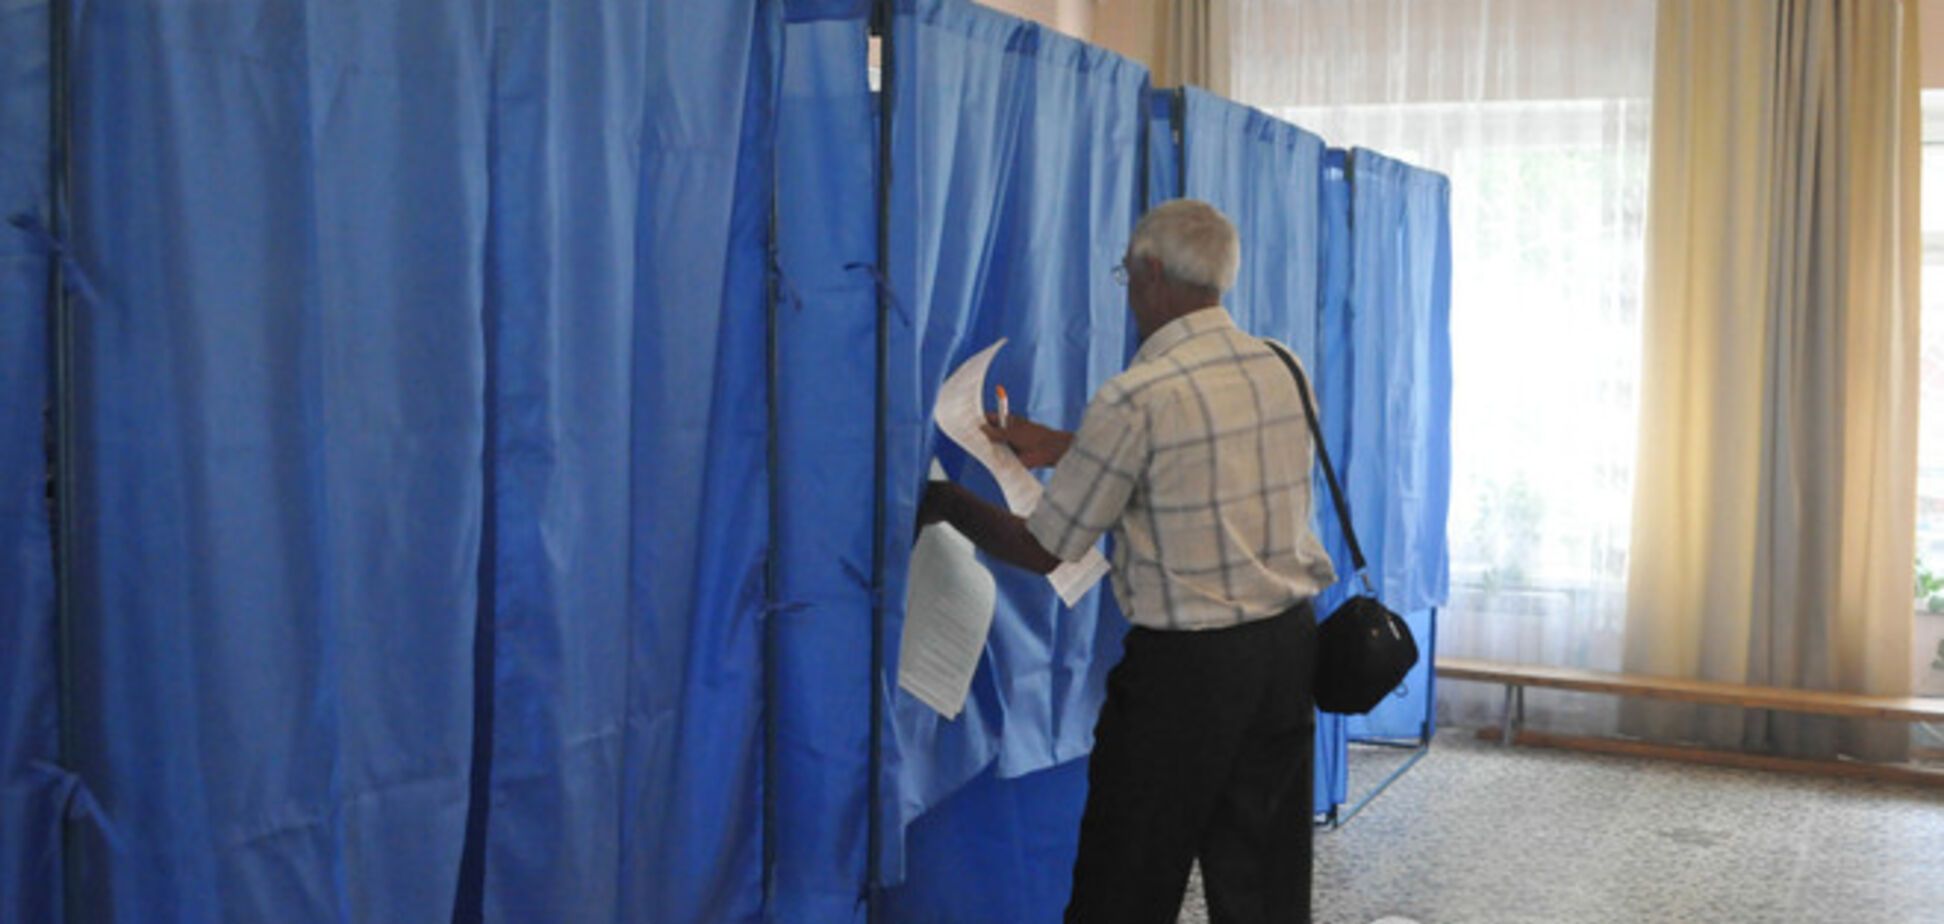 Явка виборців на Донеччині склала 15,63% - ОДА